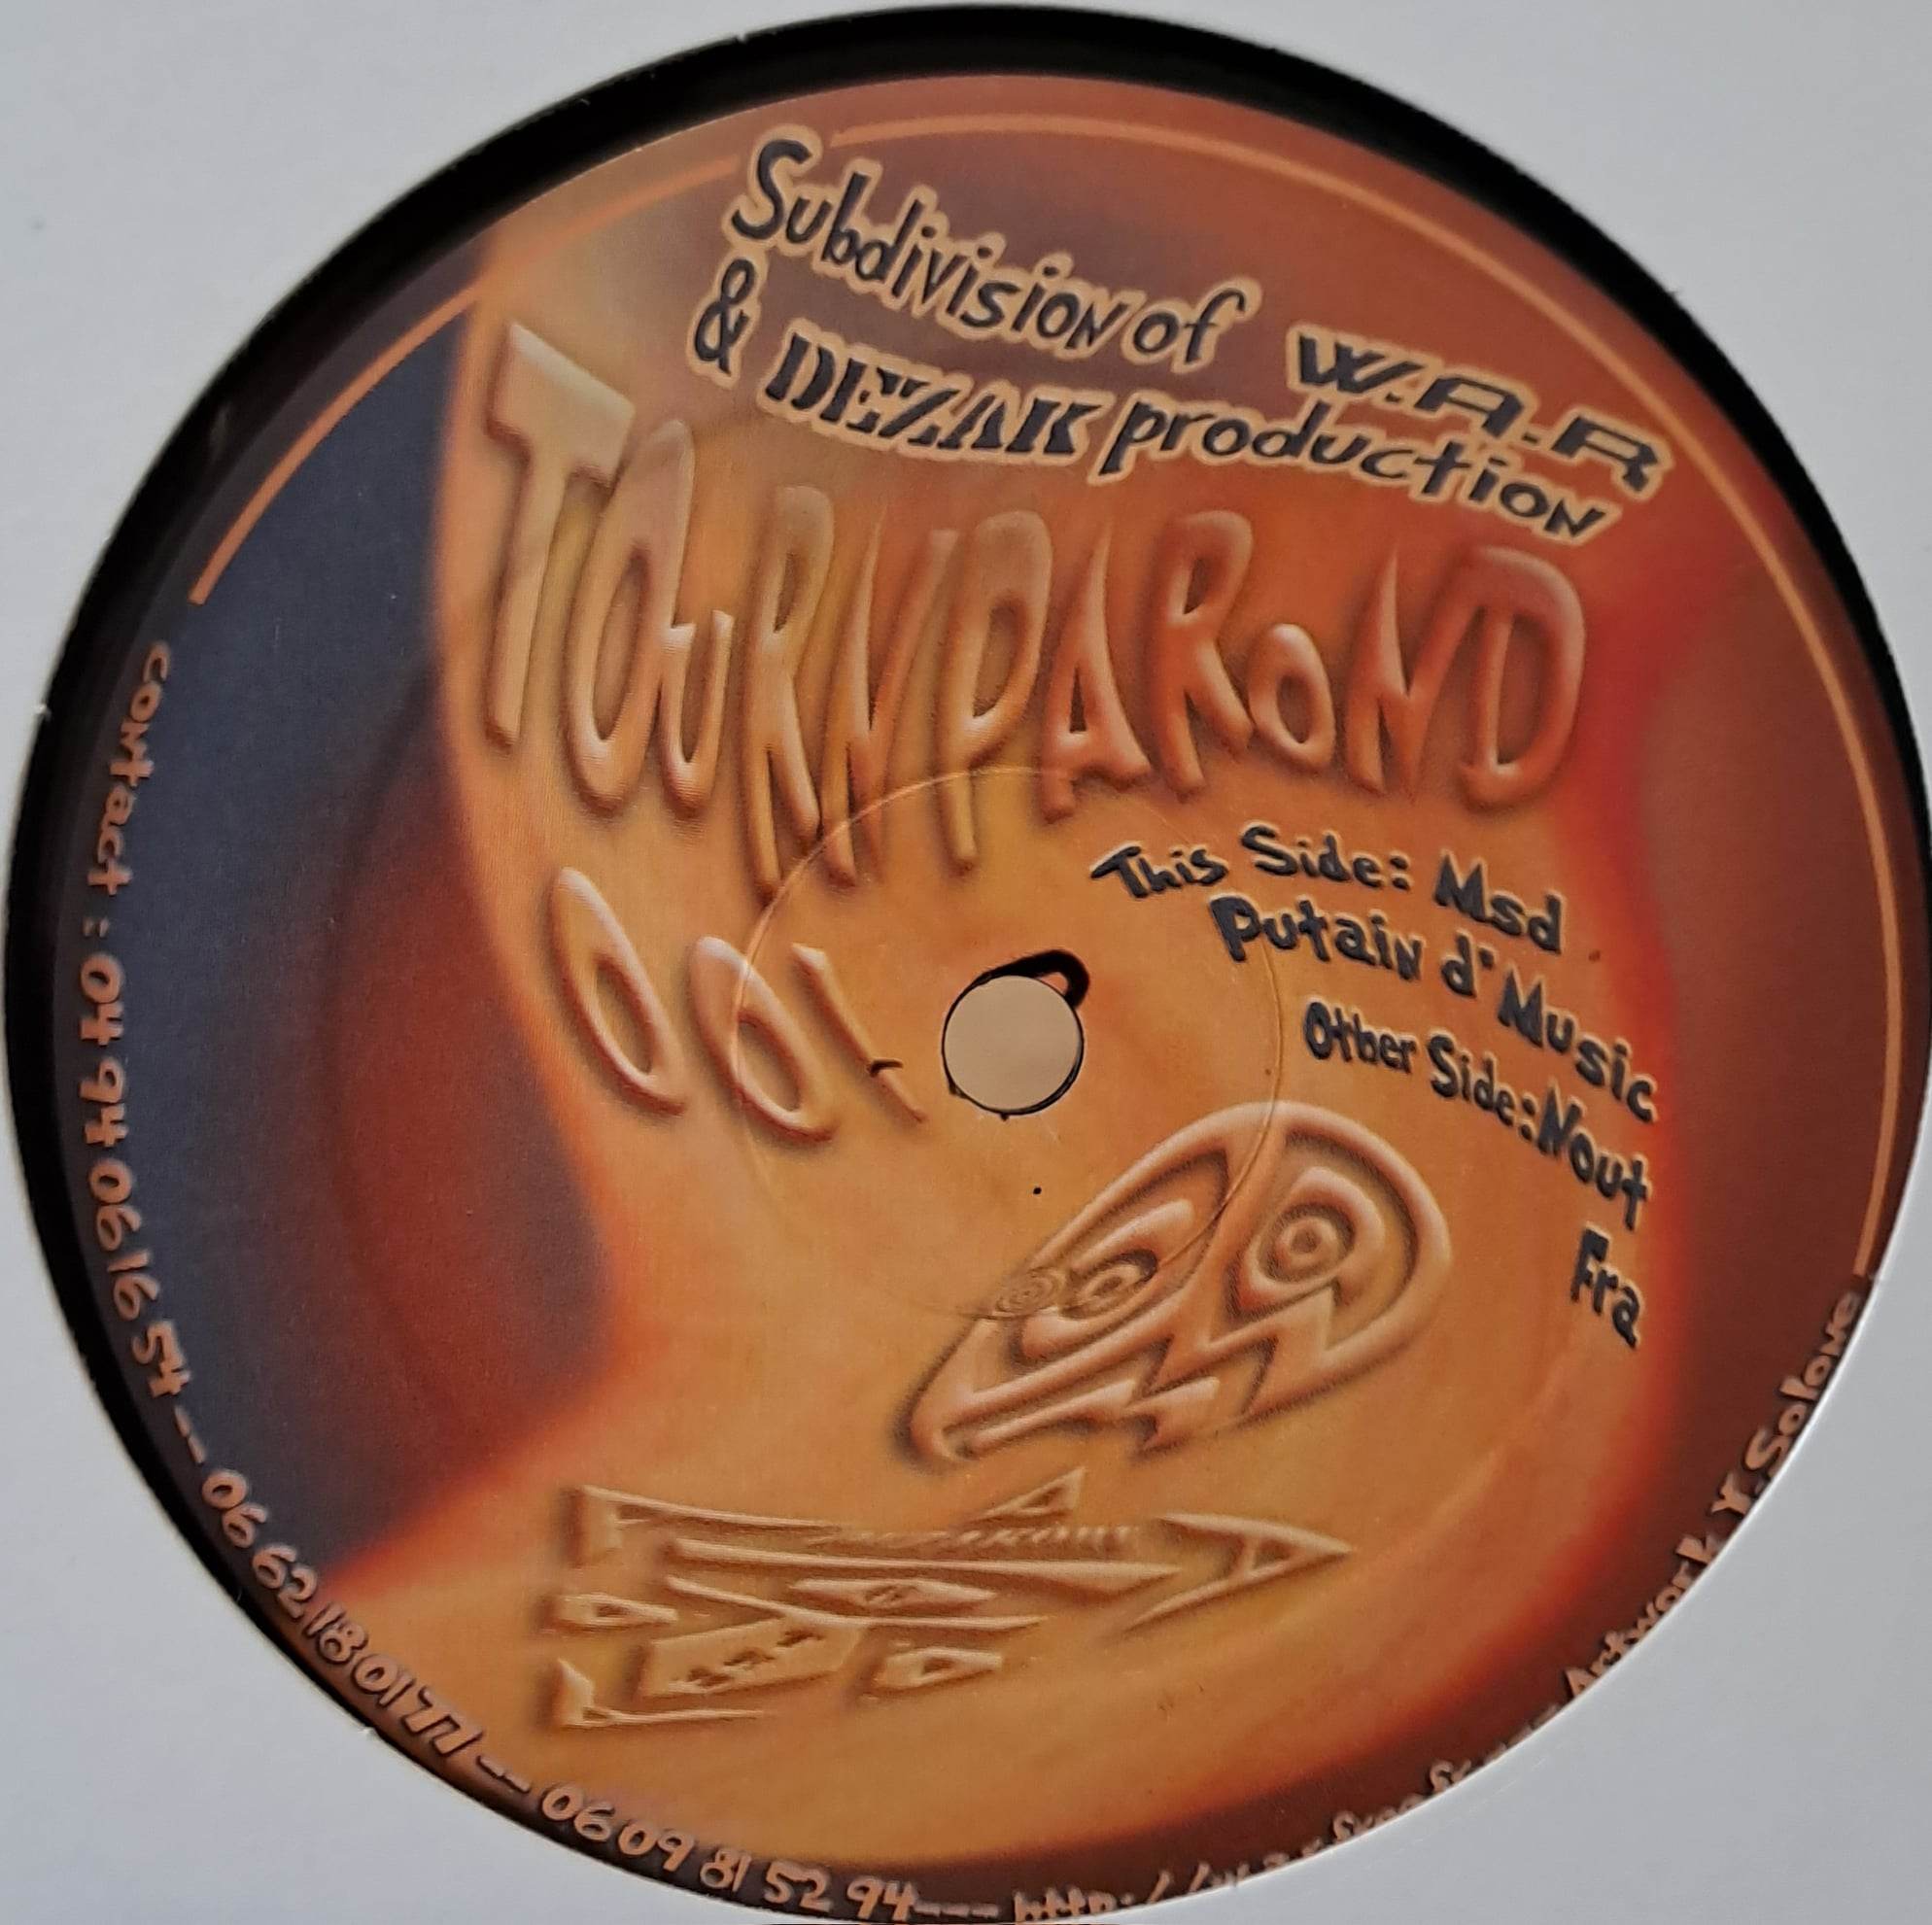 Tournparond 01 - vinyle freetekno